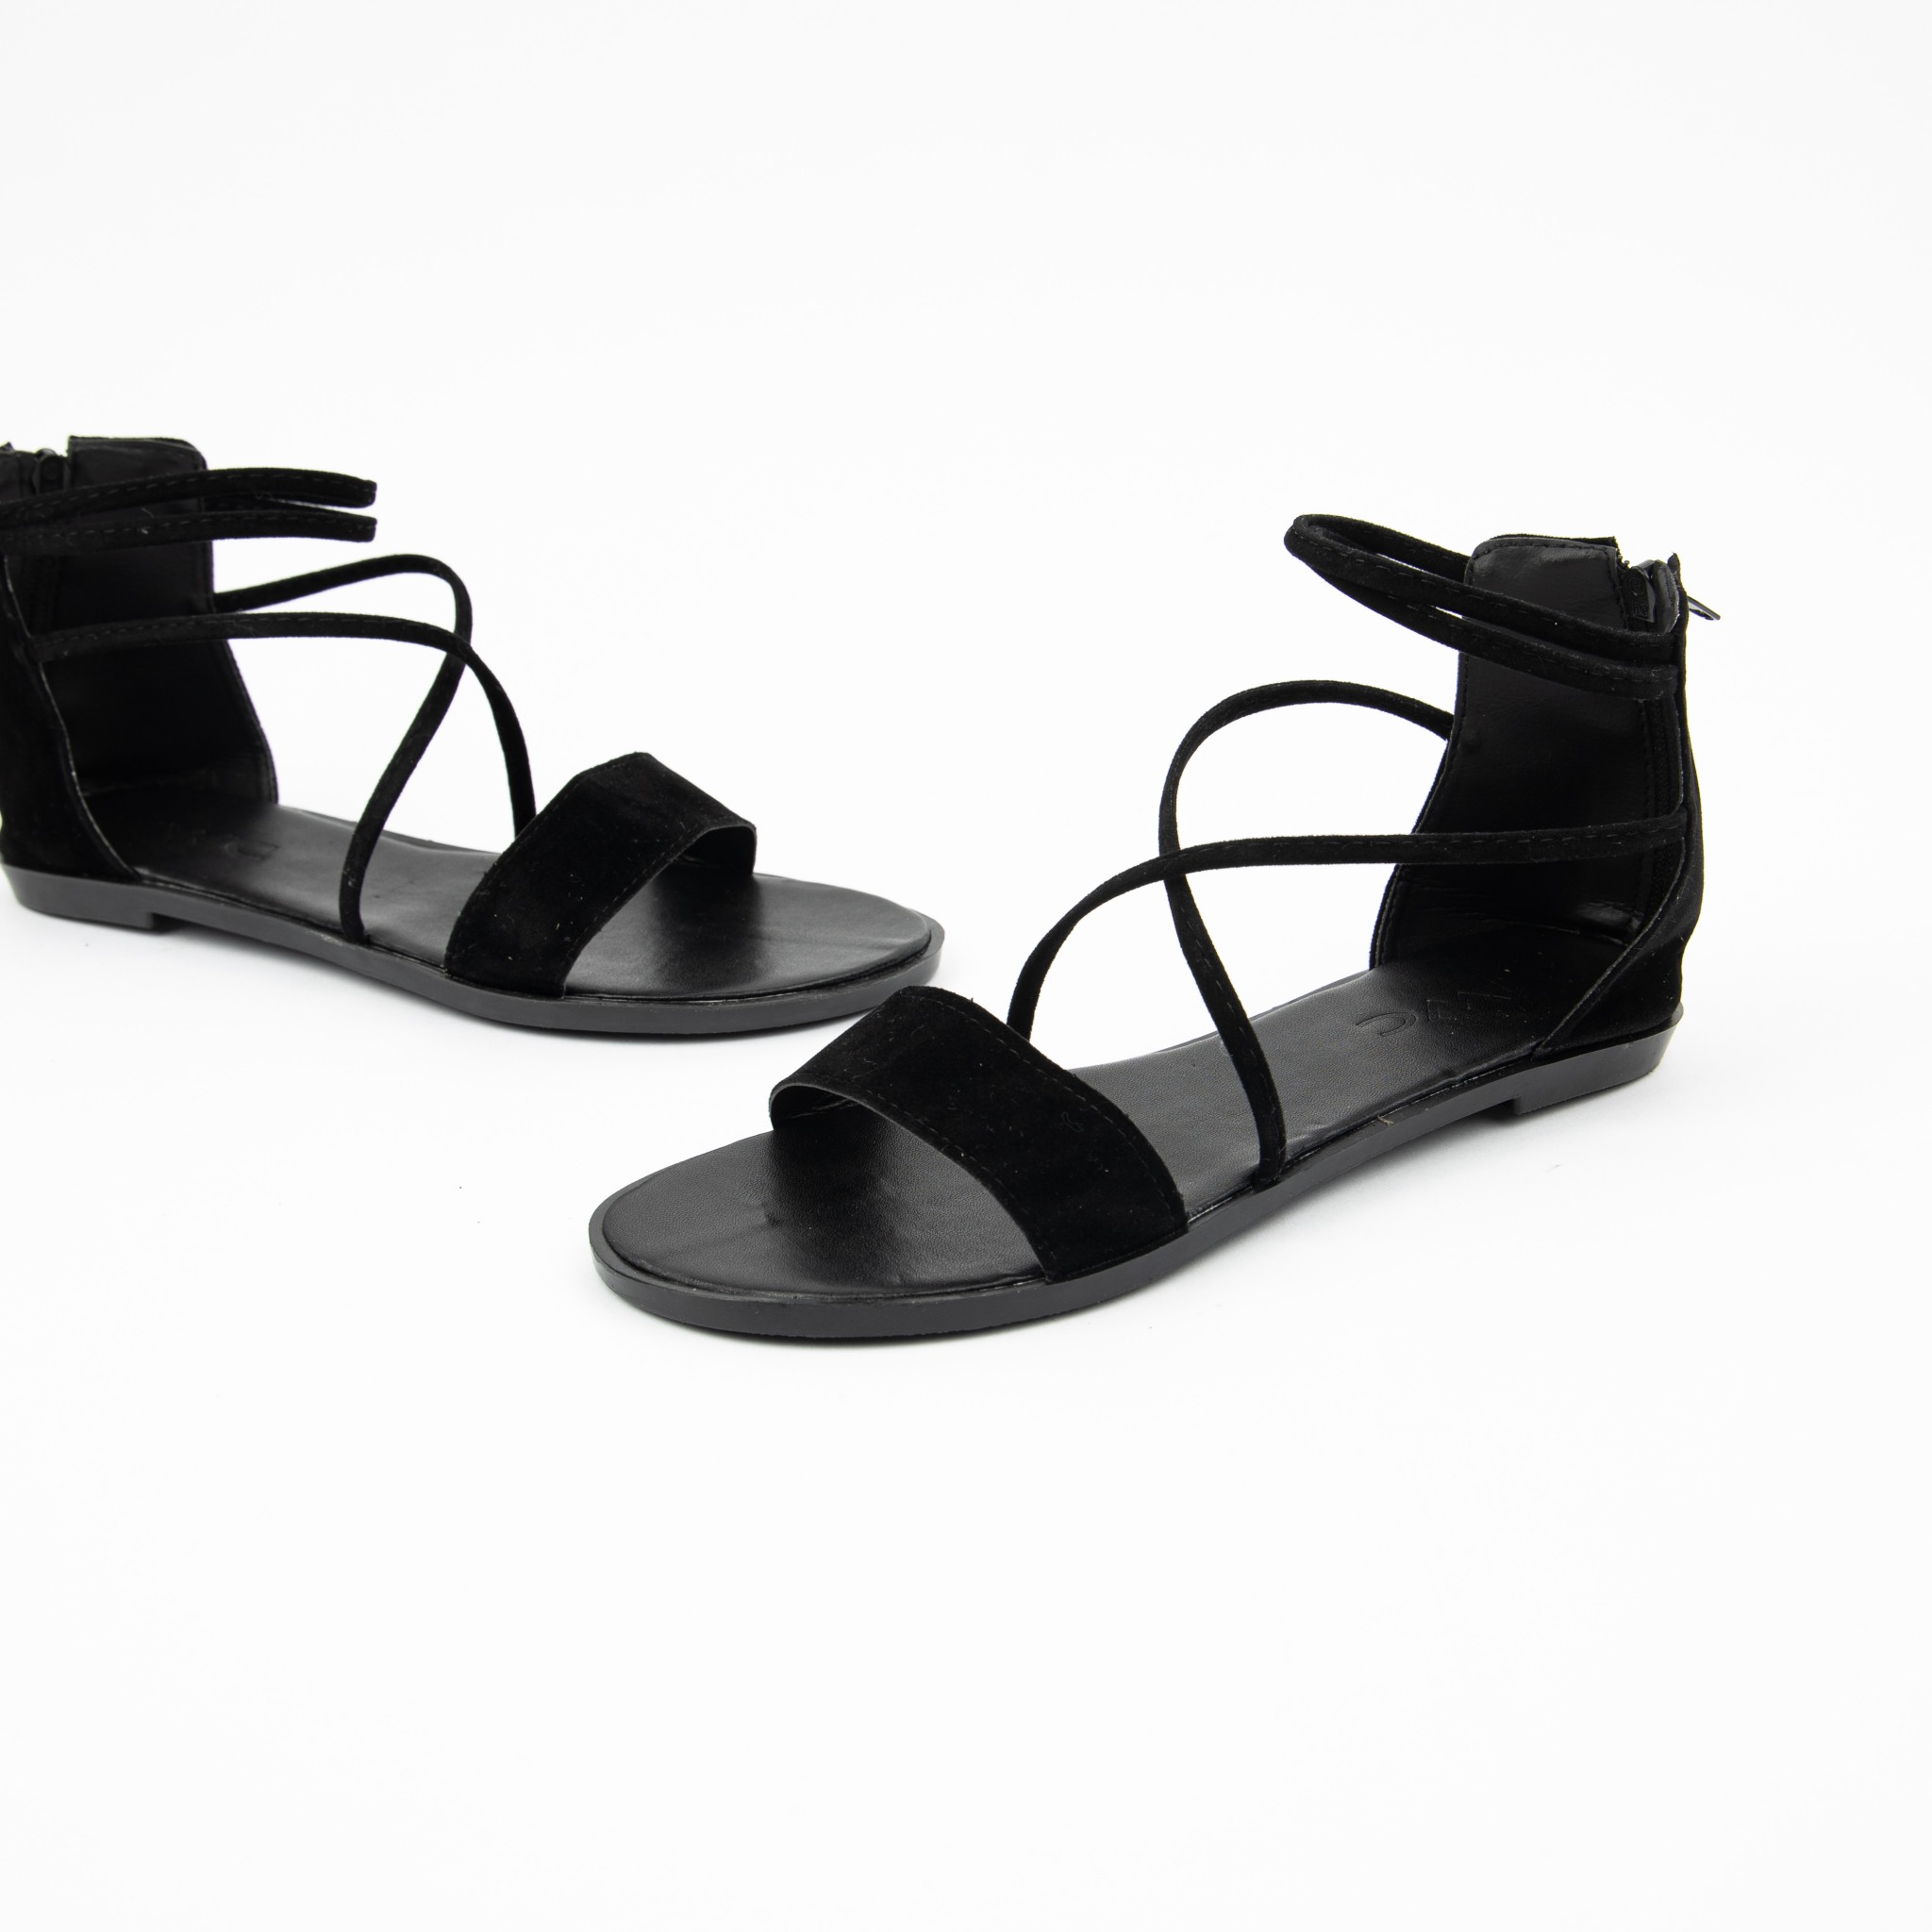 Giày Sandal MWC Đế Bệt Quai Ngang Thiết Kế Trẻ Trung Năng Động với 4 Màu Đen Xám Nâu Xanh Lá NUSD- 2509